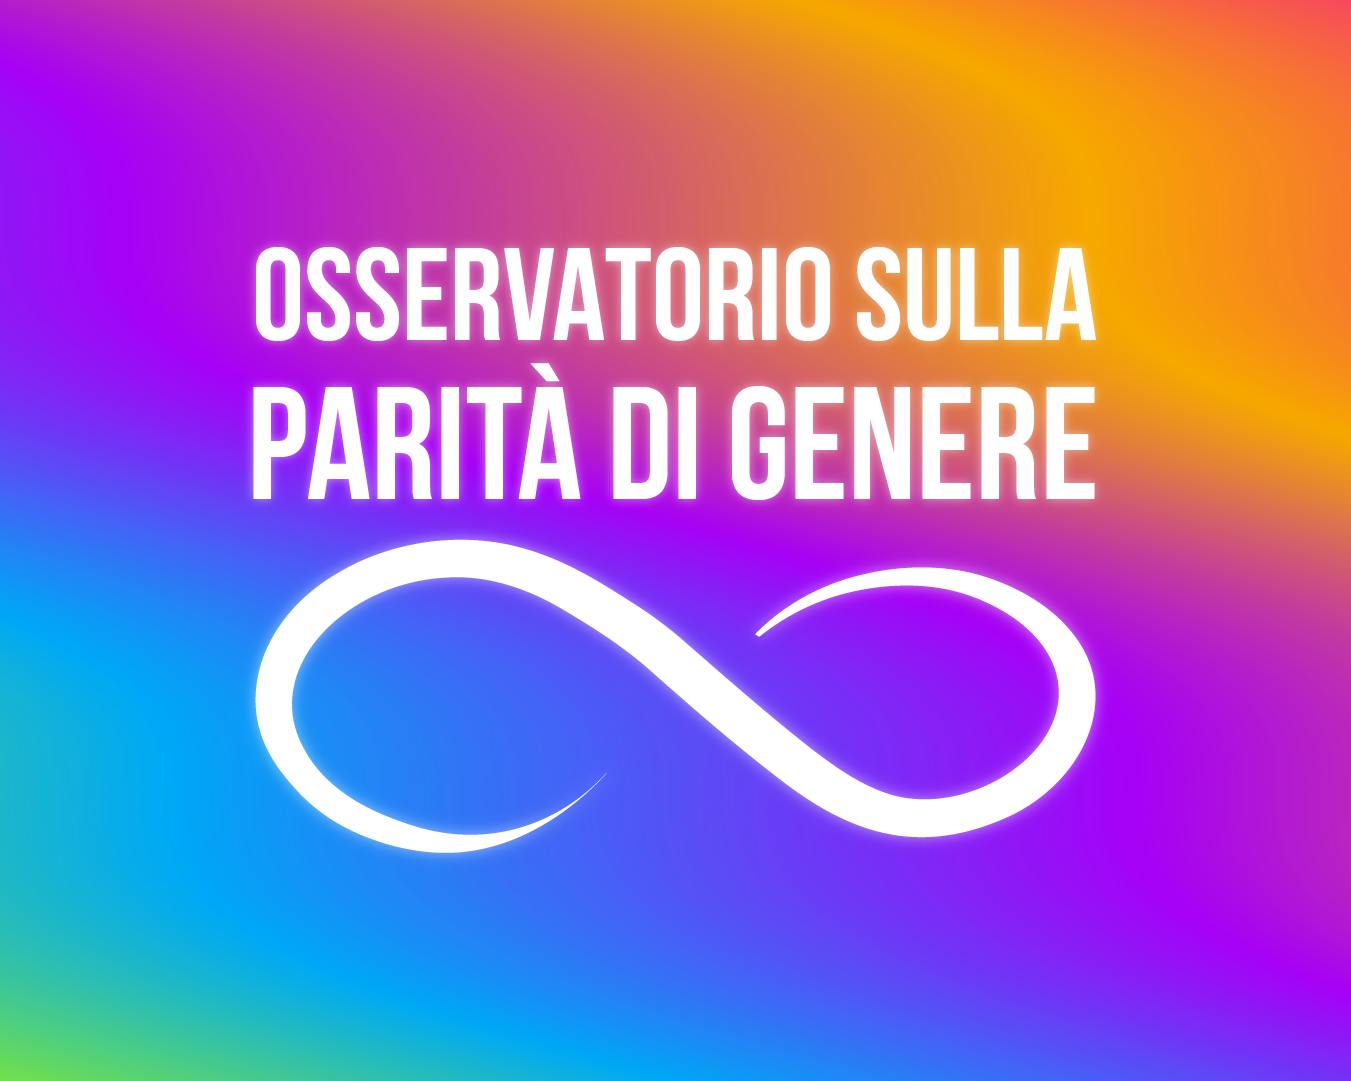 Osservatorio sulla parità di genere logo